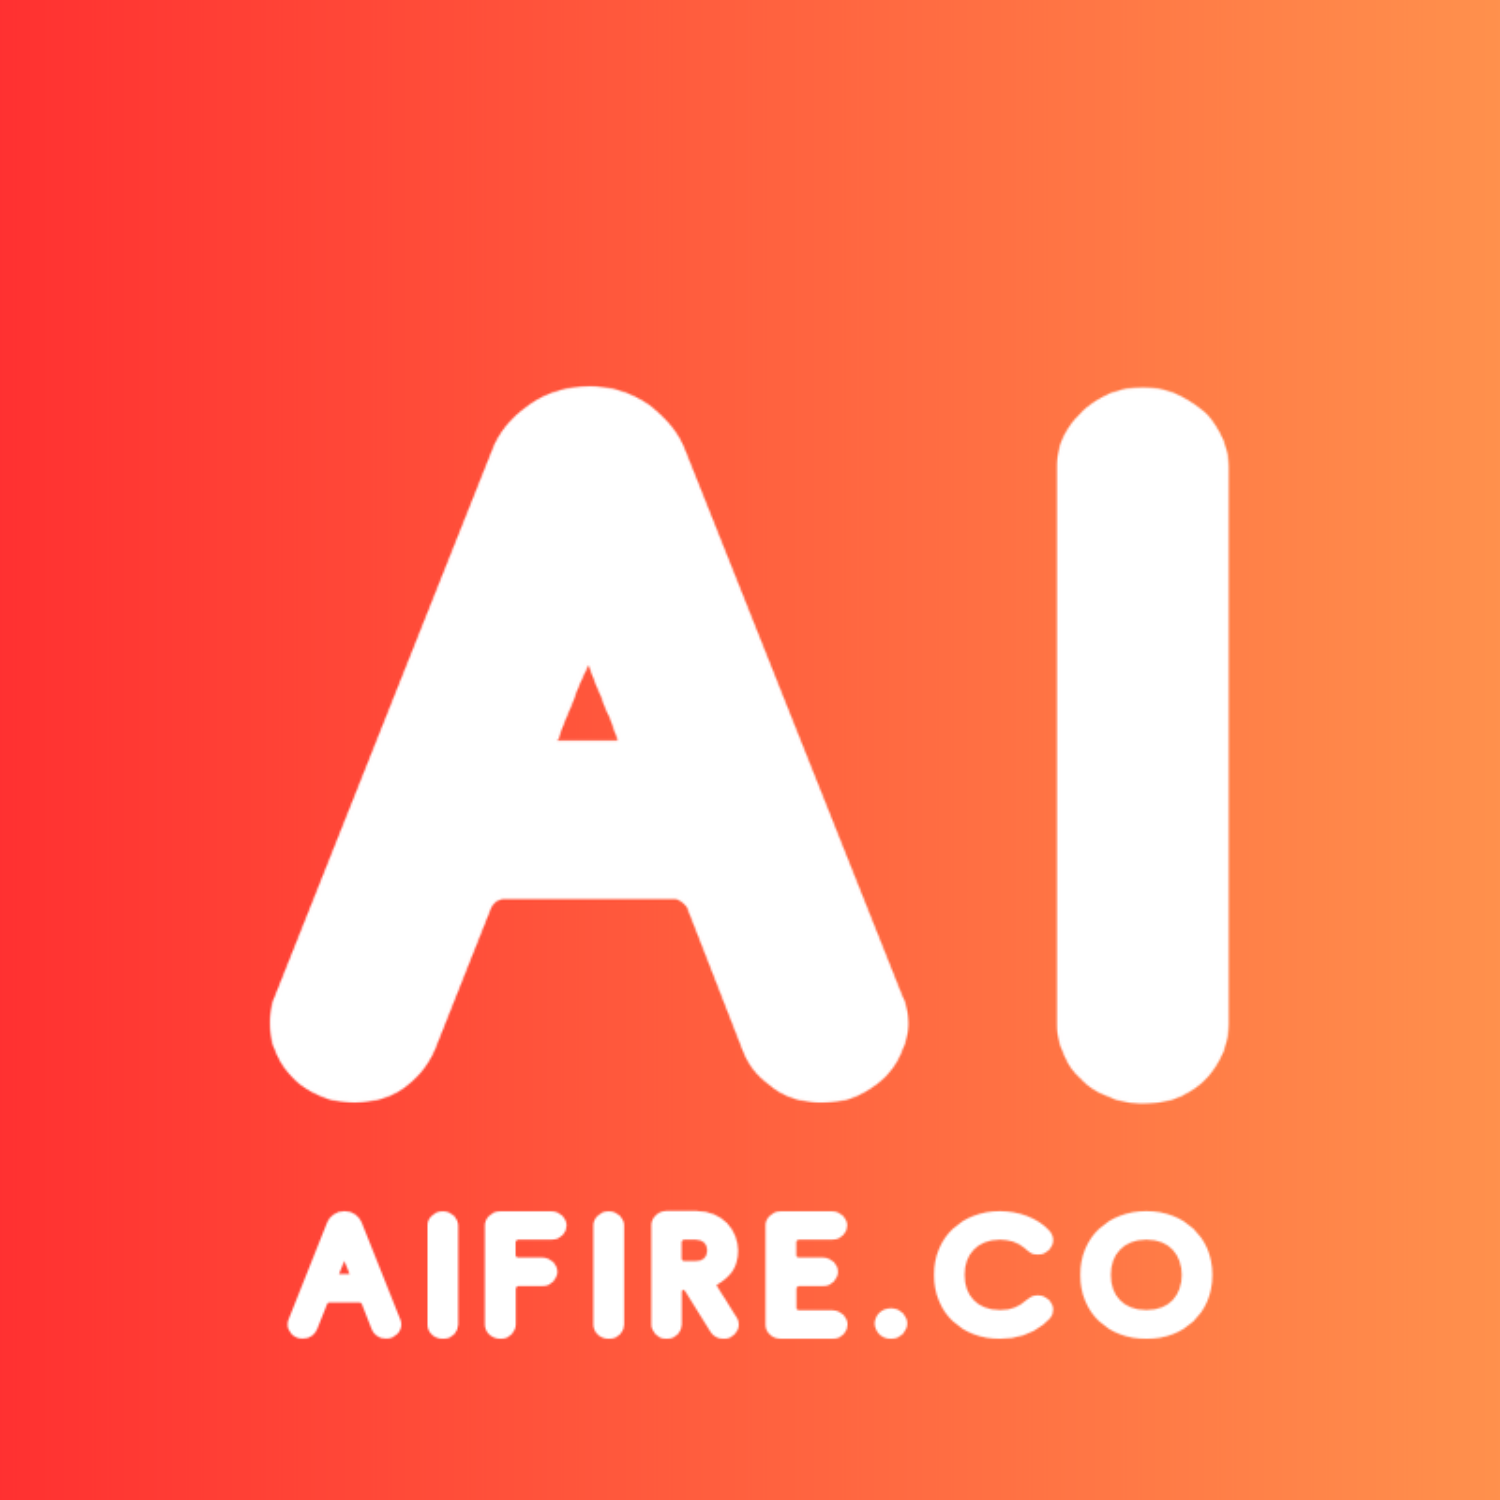 AI Fire Newsletter logo